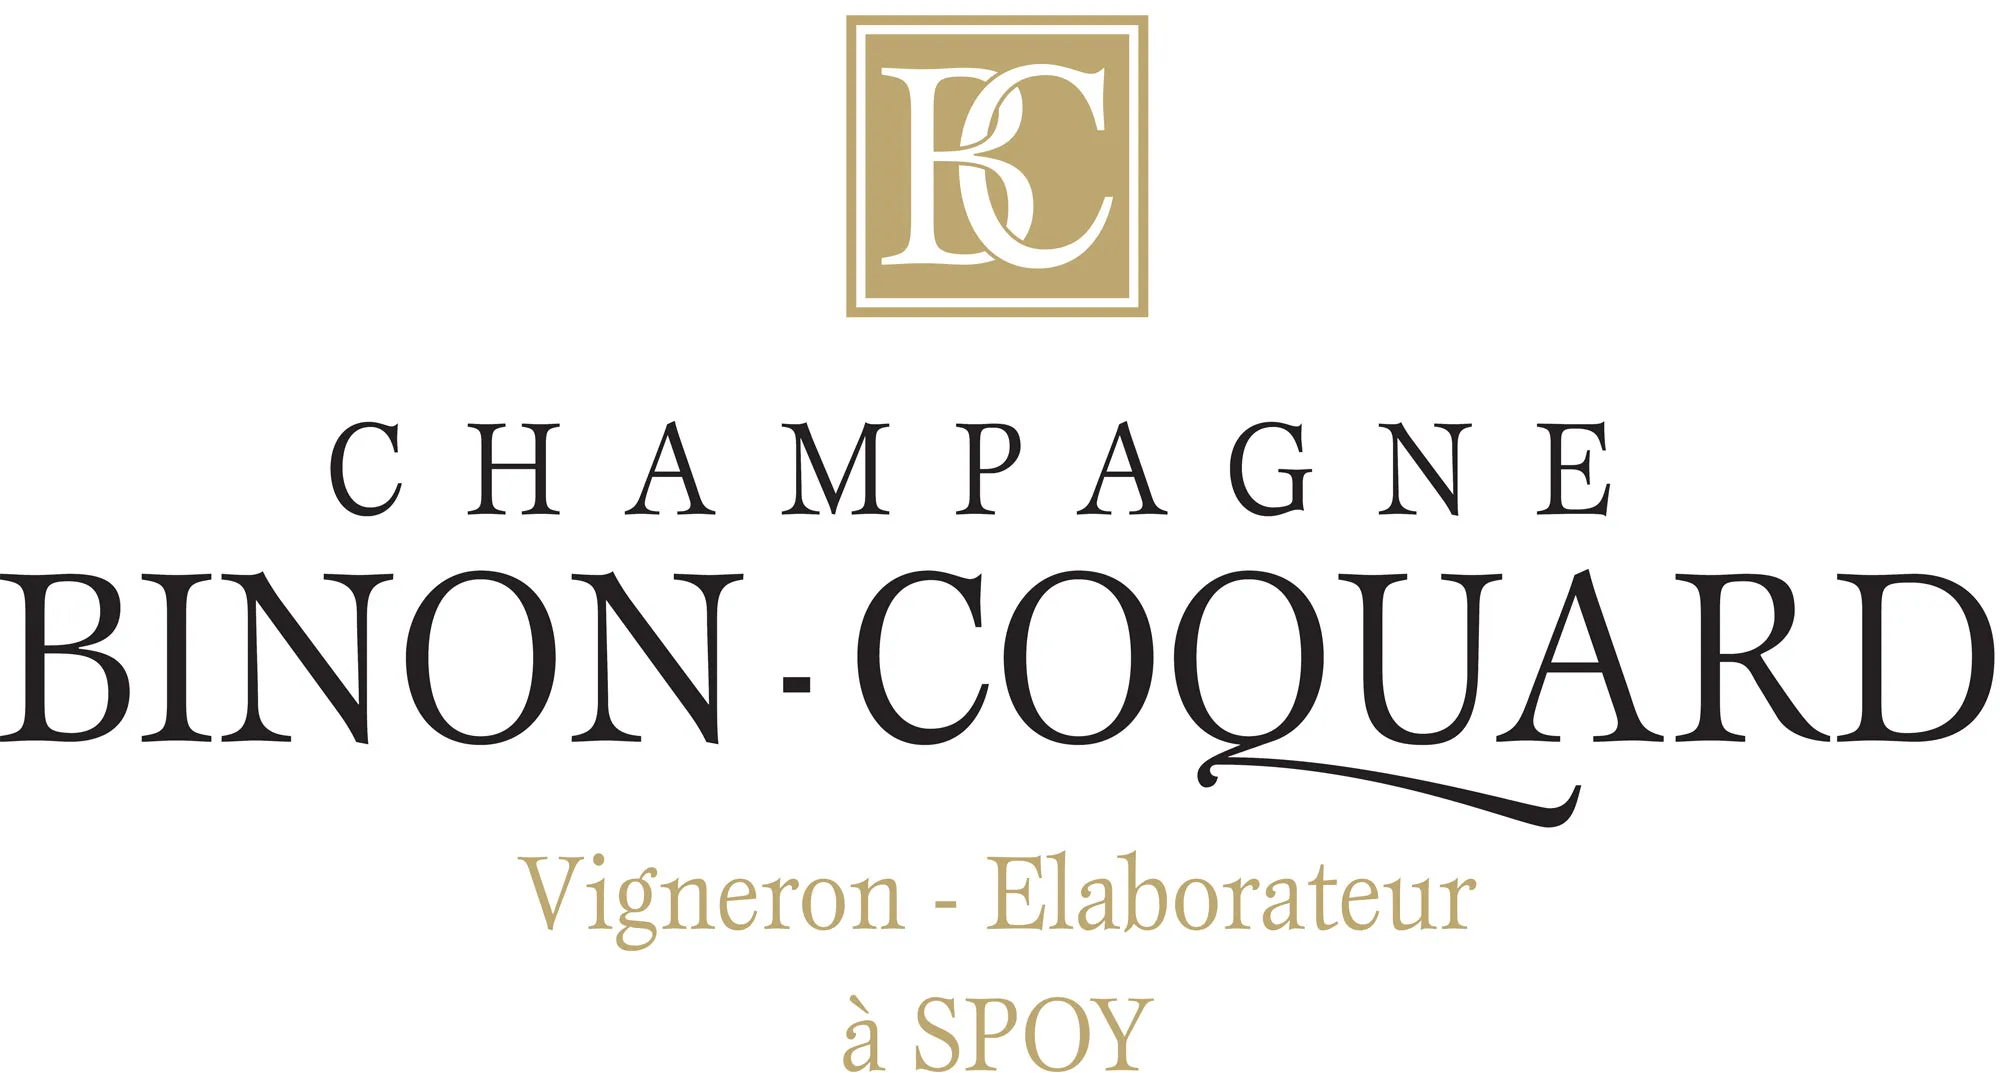 Champagne Binon-Coquard